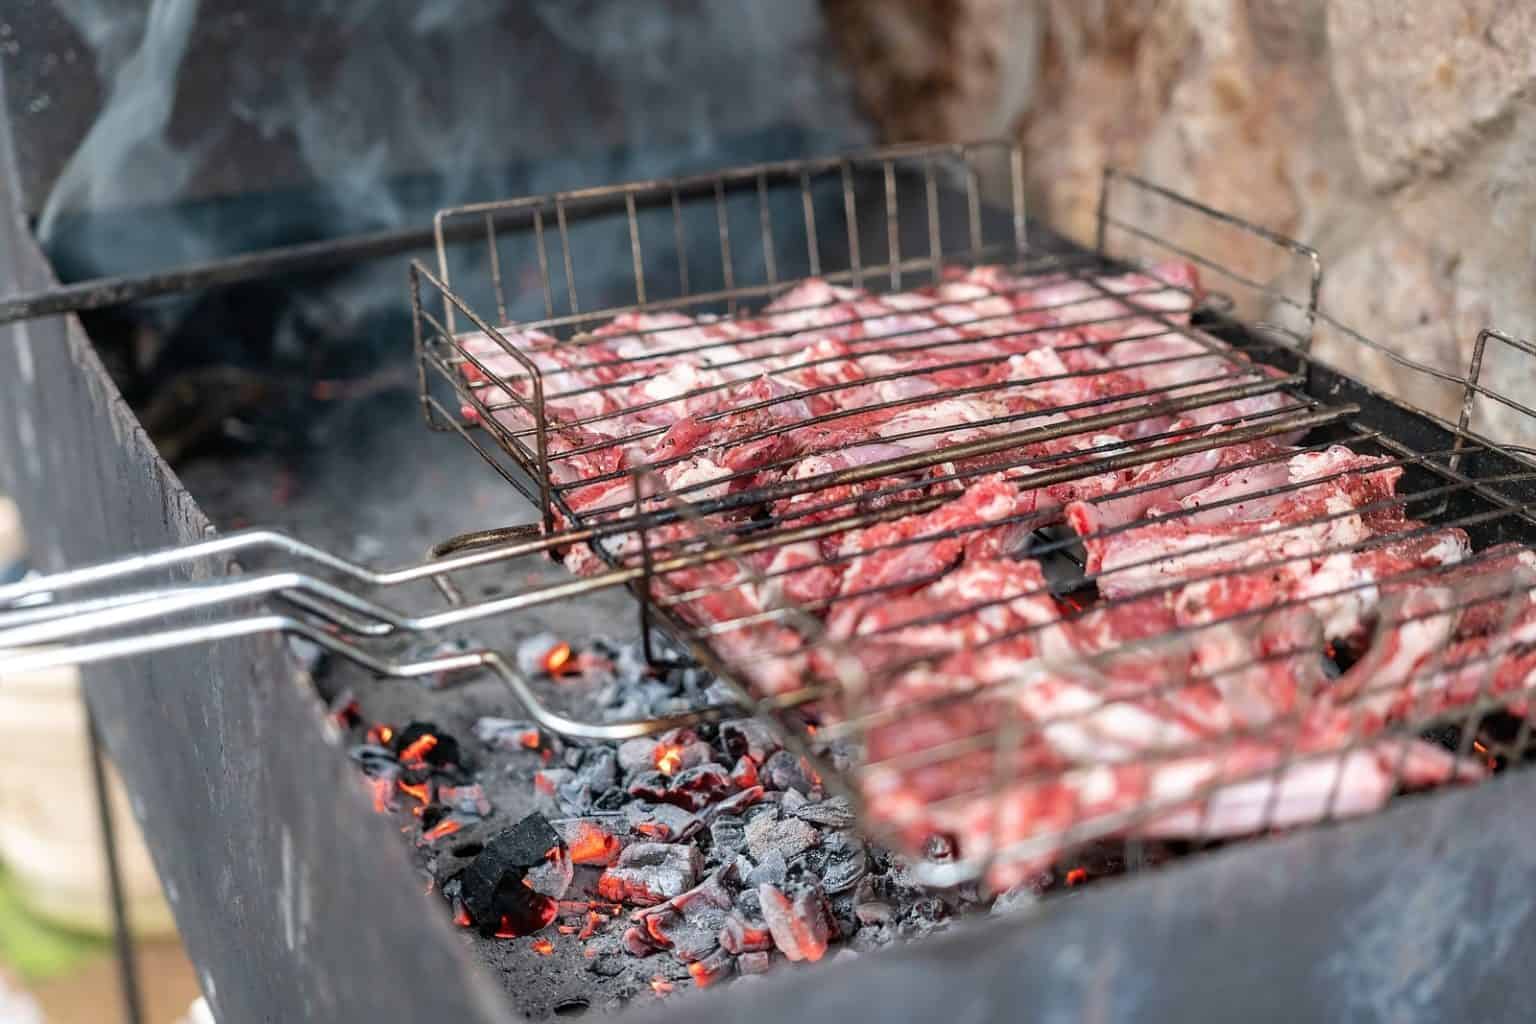 grilling lamb chops